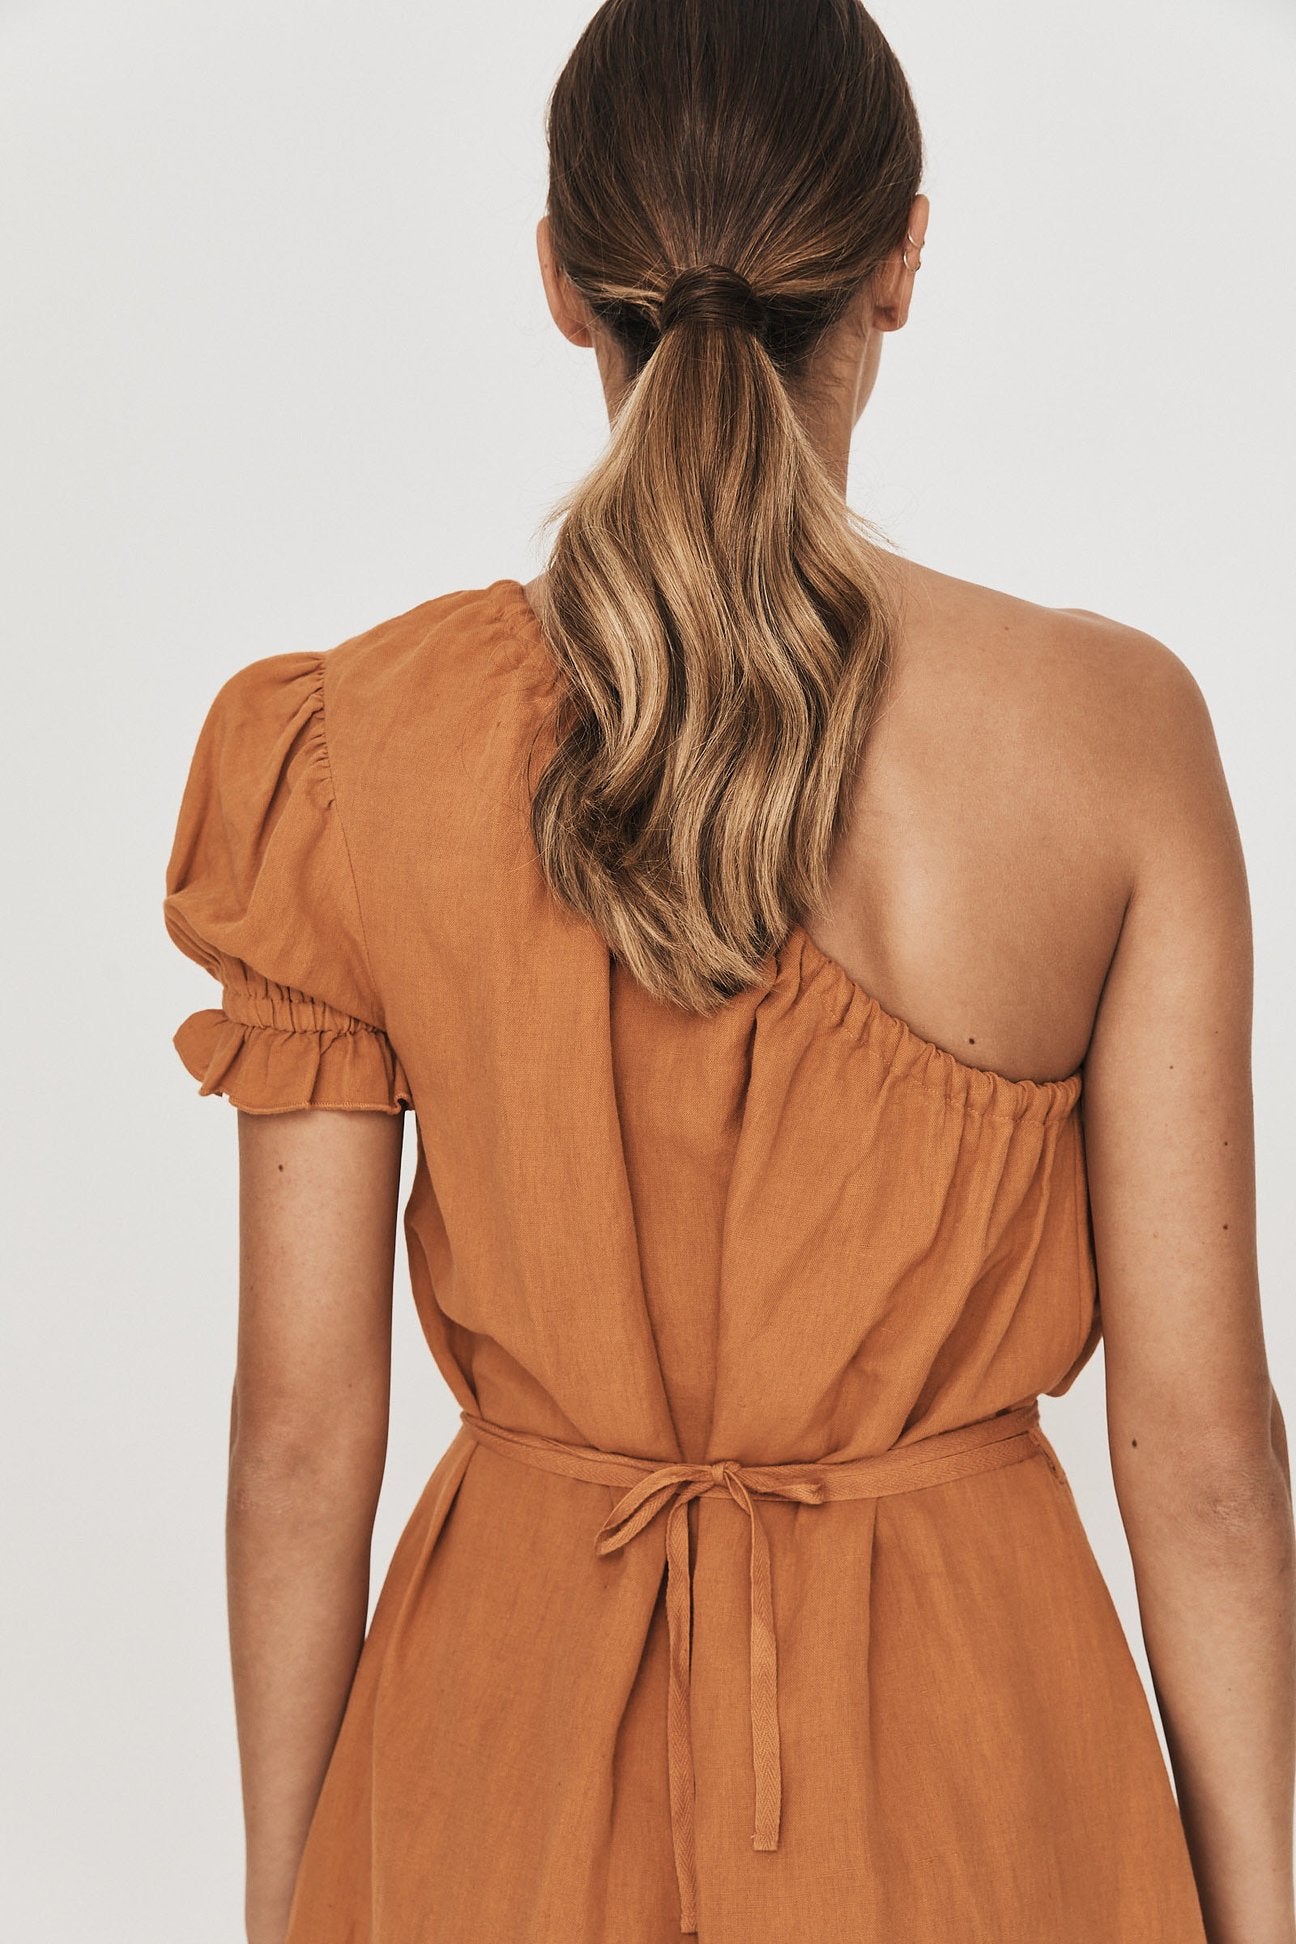 Greca Gown in Burnt Orange